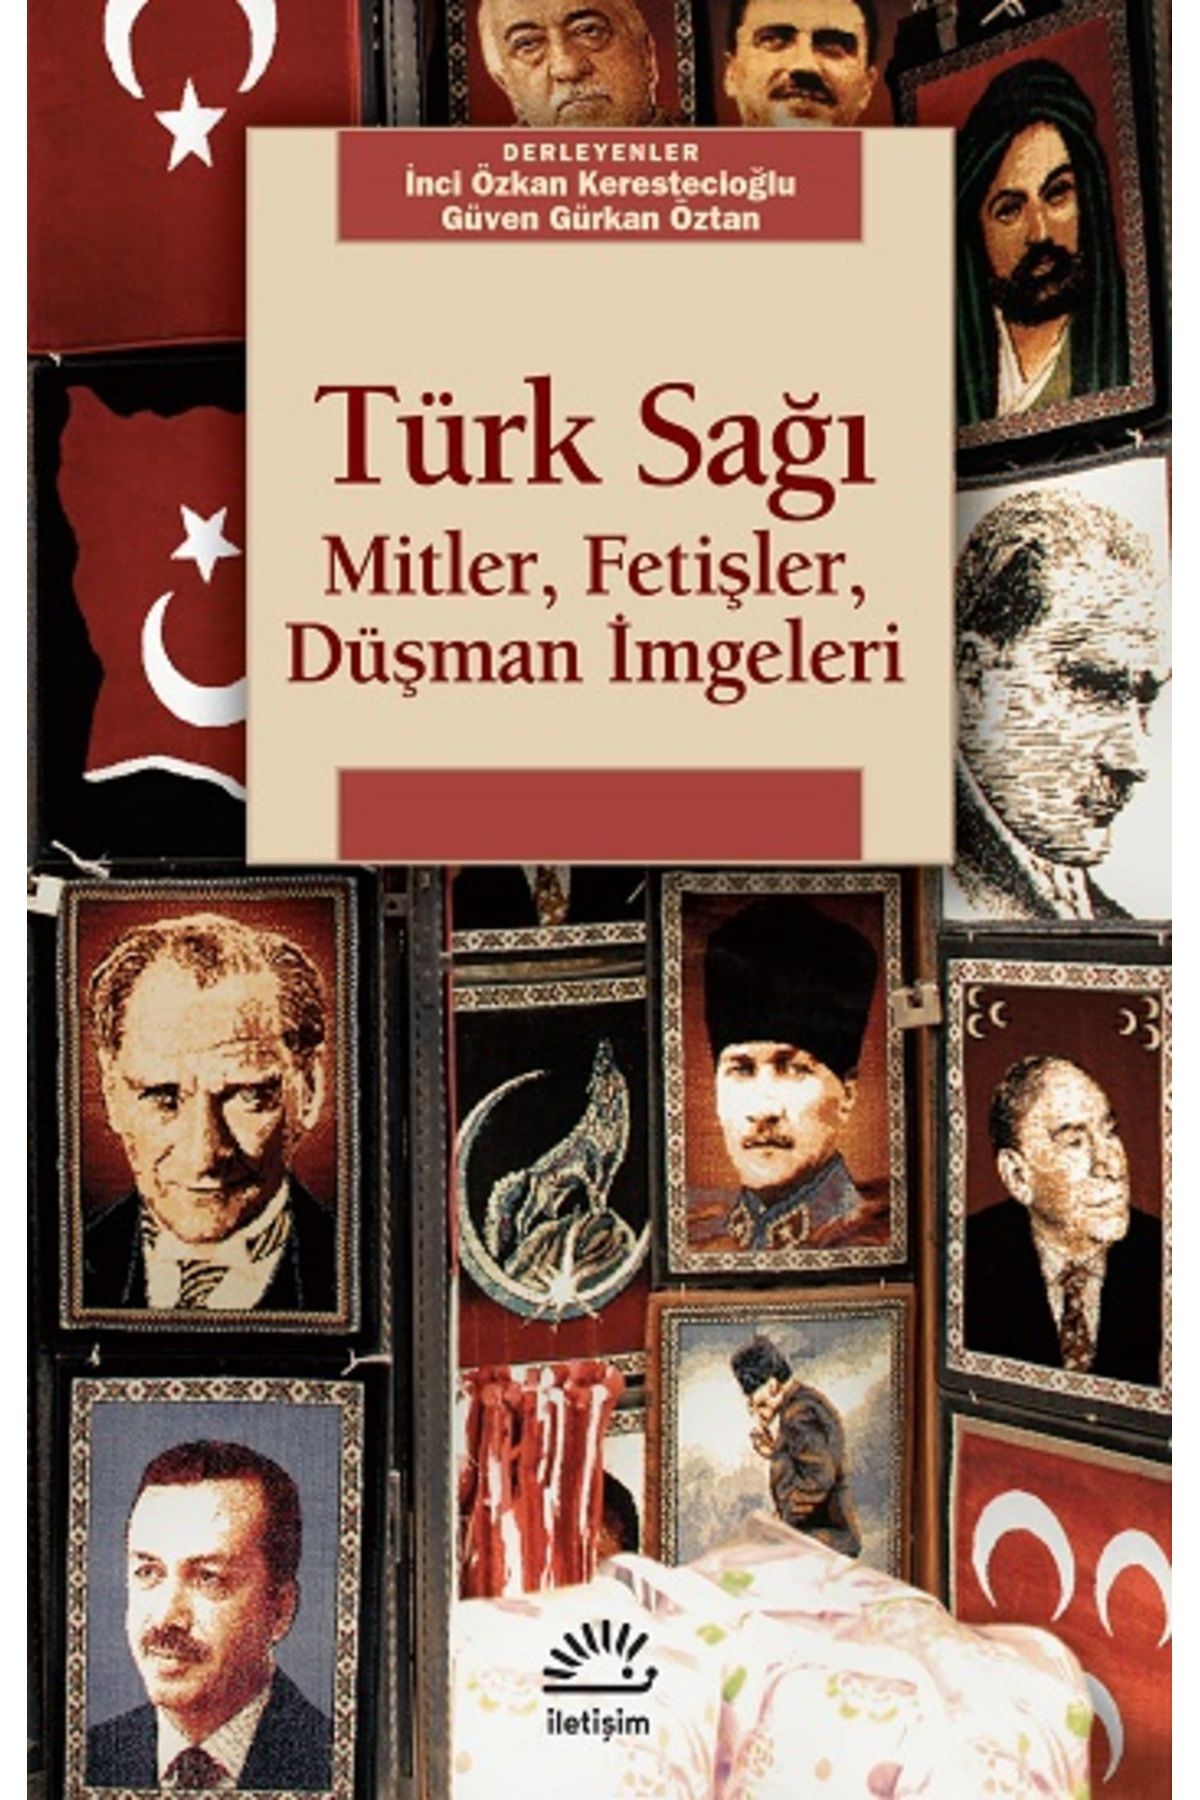 İletişim Yayınları Türk Sağı: Mitler, Fetişler, Düşman Imgeleri